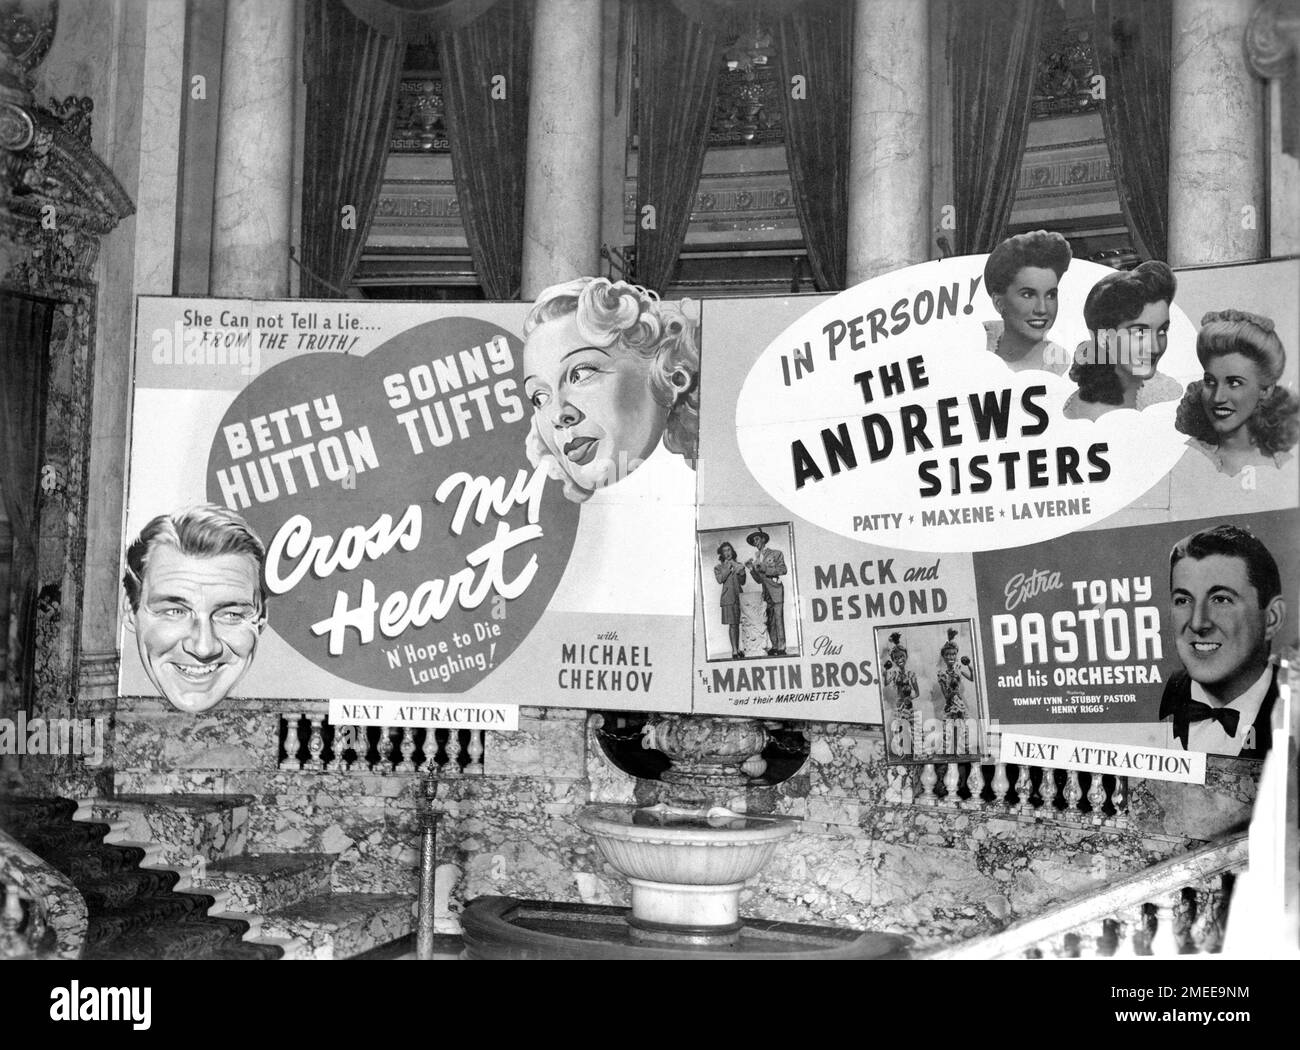 Lobby Interior des Paramount Movie Theatre in New York mit Werbung für die bevorstehende Attraktion VON BETTY HUTTON und SONNY TUFTS in MEINEM HERZEN 1946 Regisseur JOHN BERRY Paramount Pictures mit Live-Auftritten von den ANDREWS SCHWESTERN und TONY PASTOR und seinem Orchester ab dem 18. Dezember 1946 Stockfoto